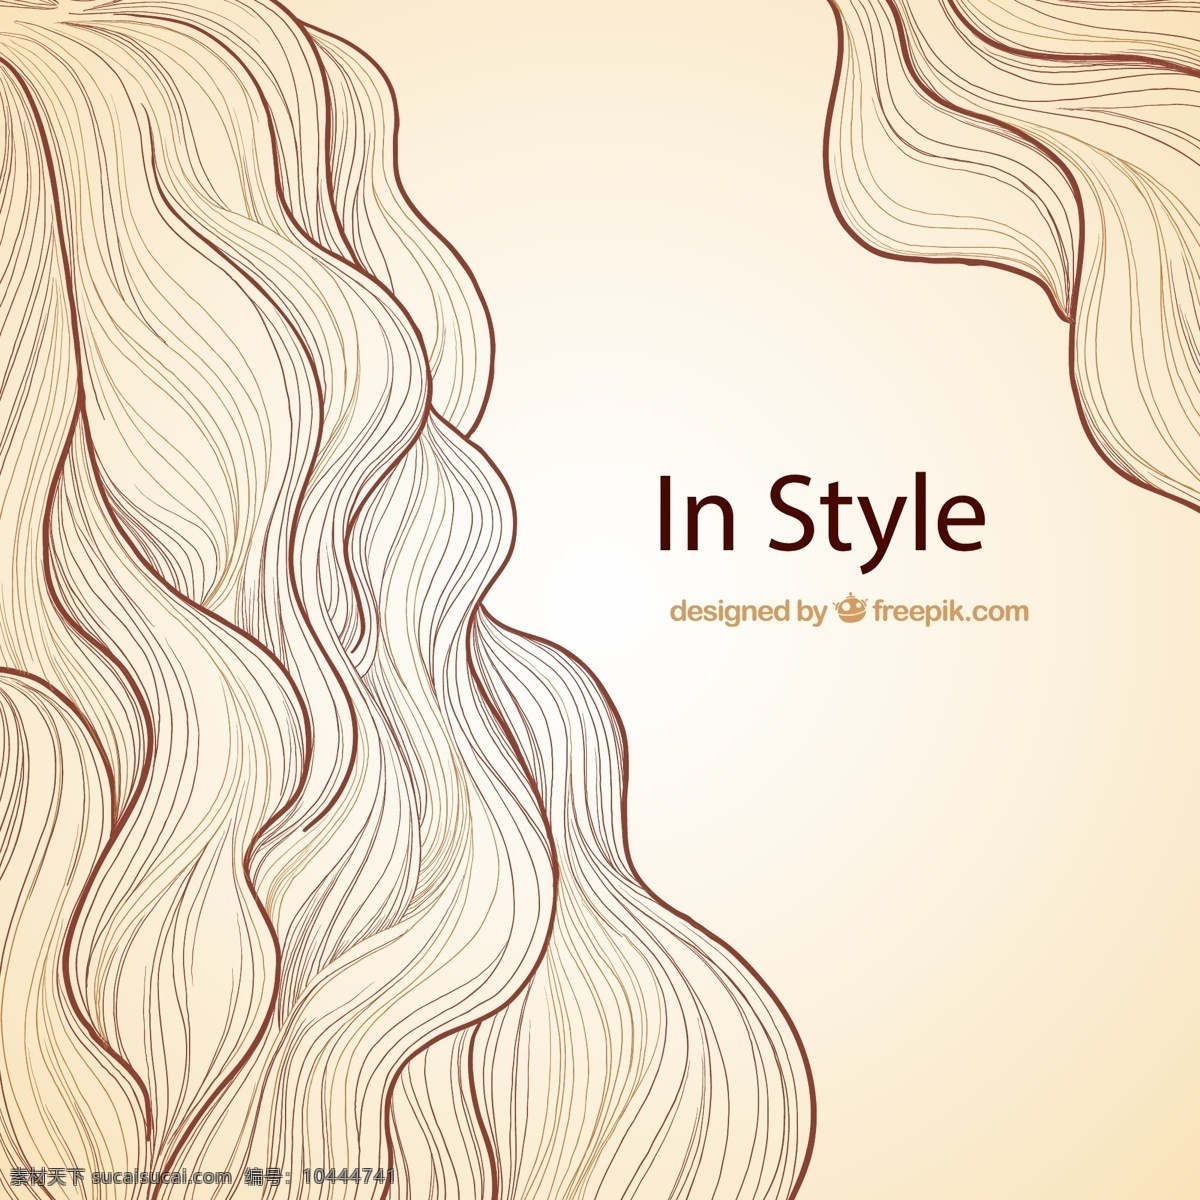 发型背景 背景 美发 美容 绘制 海浪 沙龙 插图 理发 头发 发型 棕色 取材 波浪 手绘 图标 高清 源文件